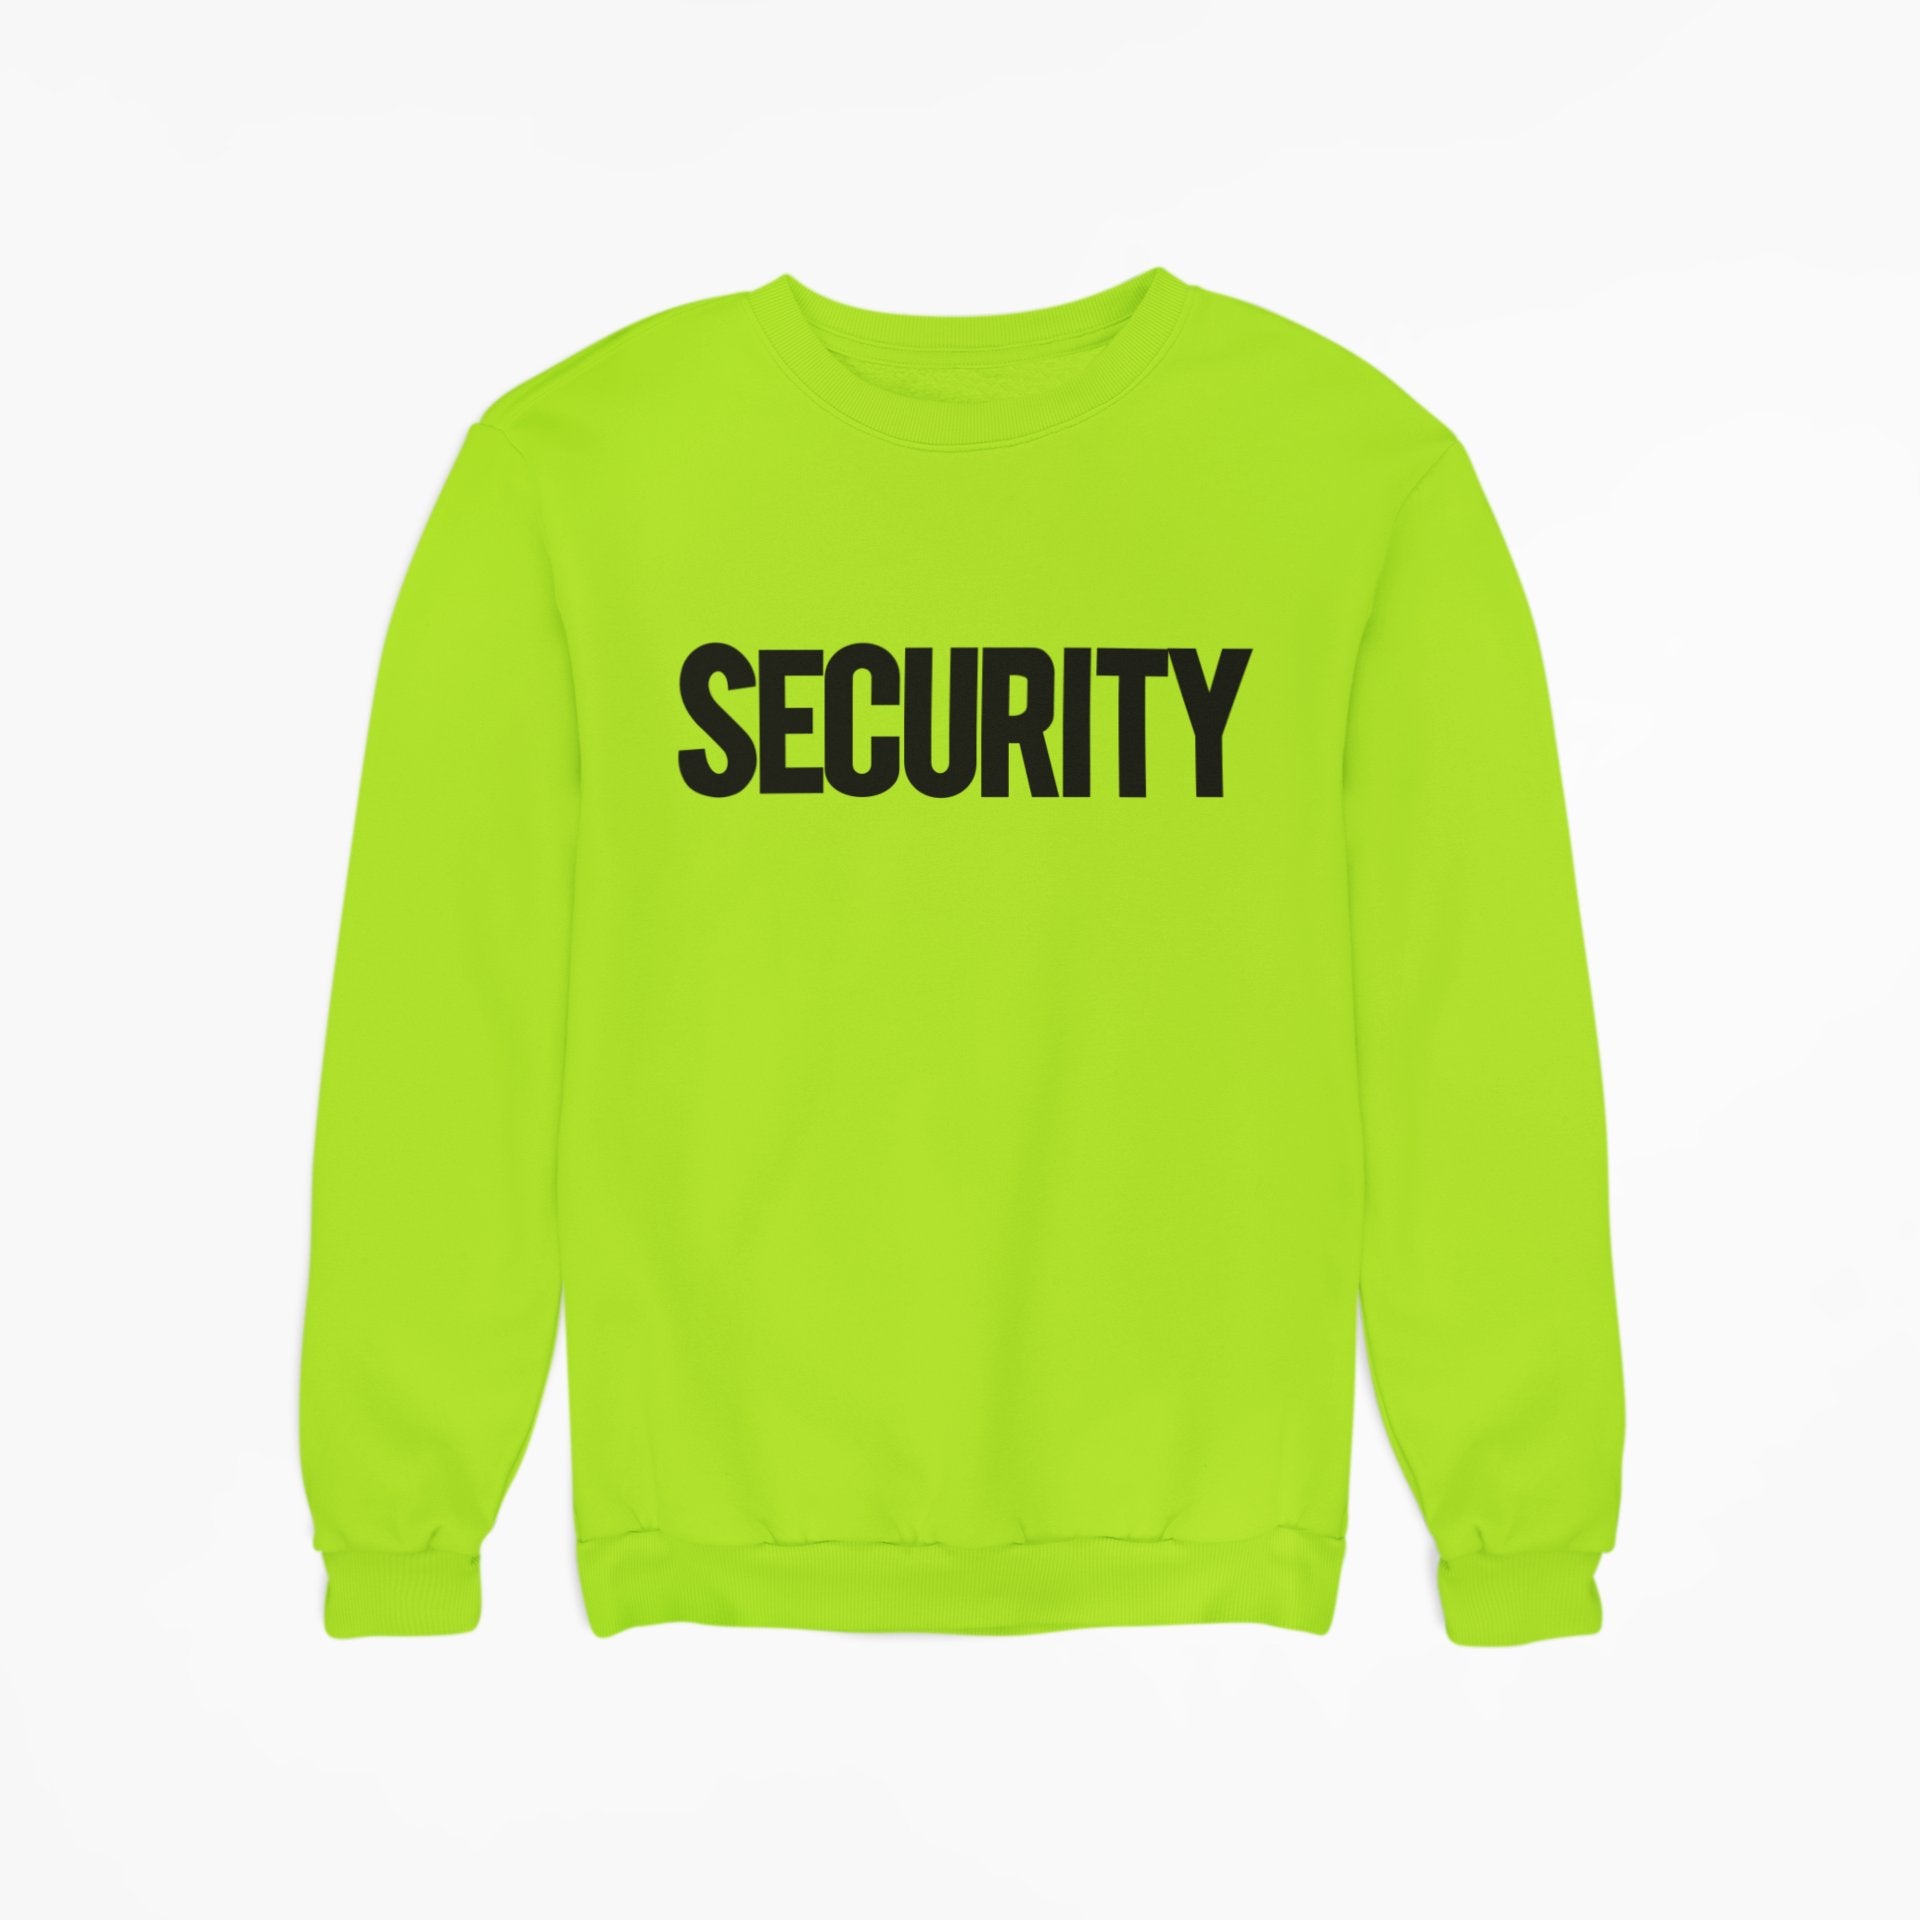 Titel: Sicherheits-Sweatshirt für Herren aus weichem Fleece mit Rundhalsausschnitt (Schwarz/Weiß)